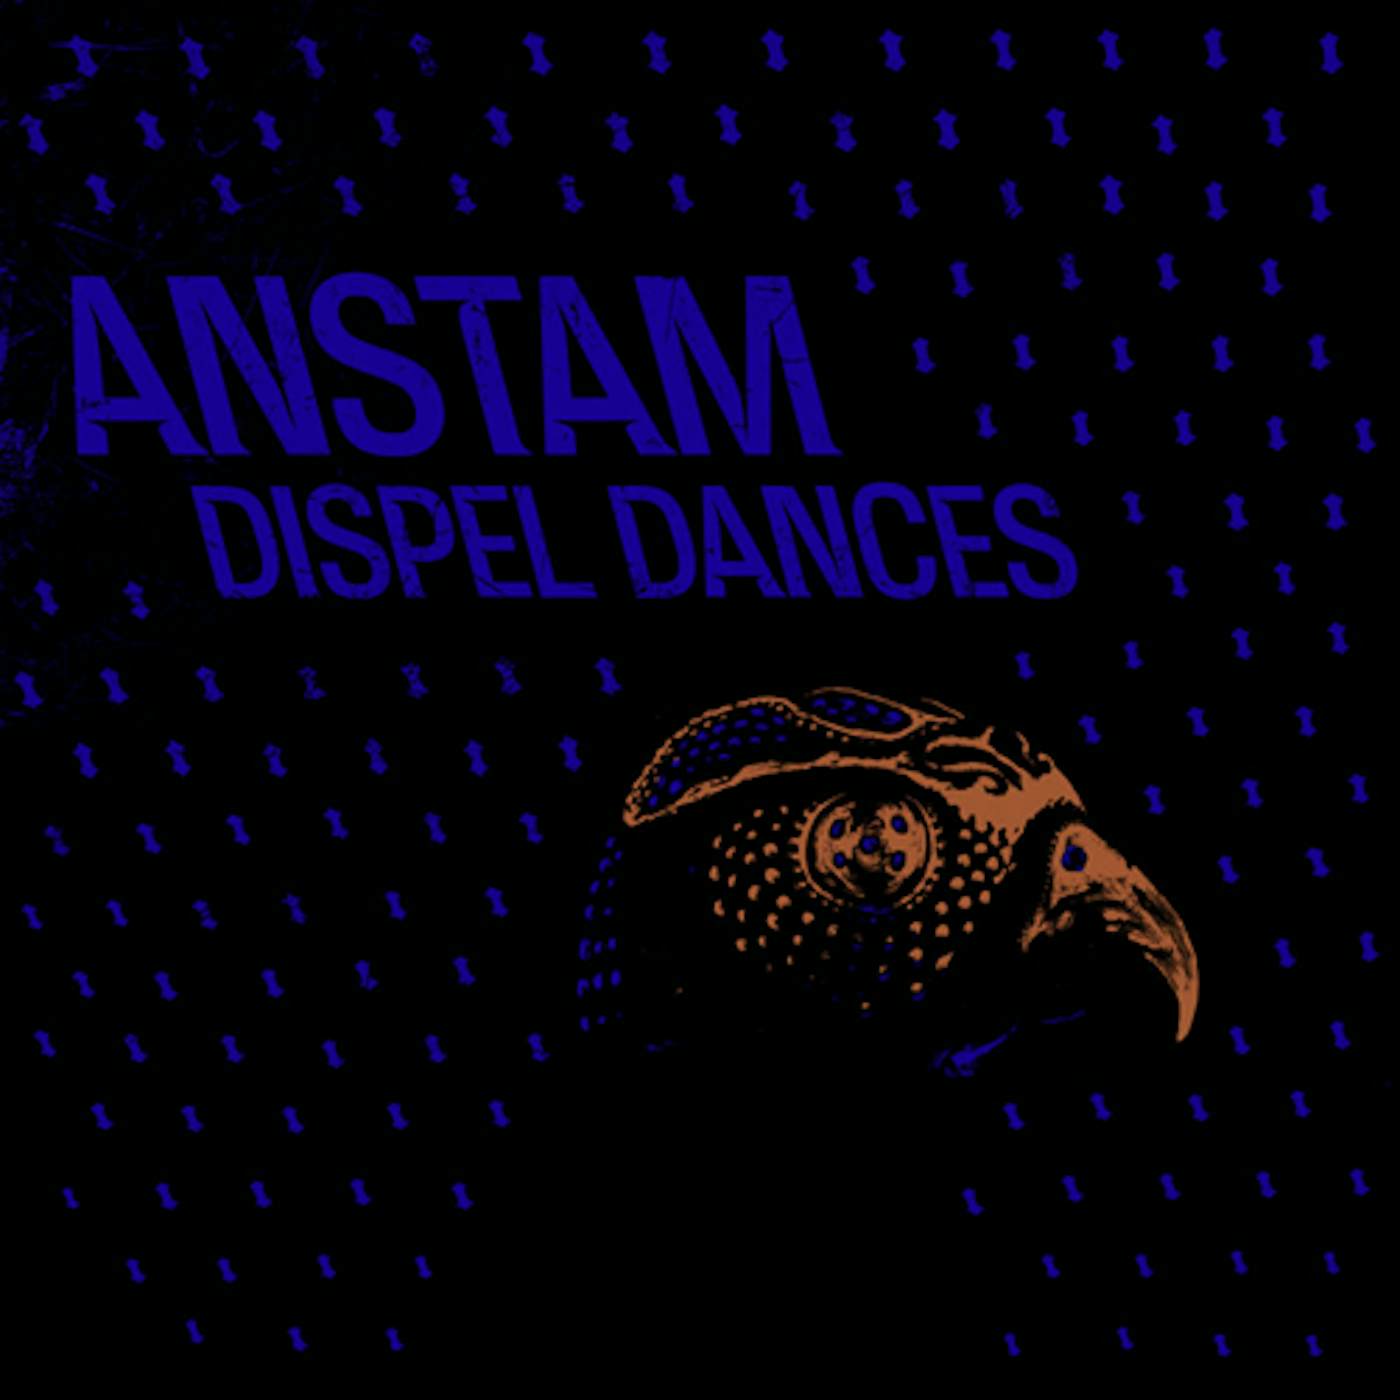 Anstam Dispel Dances Vinyl Record